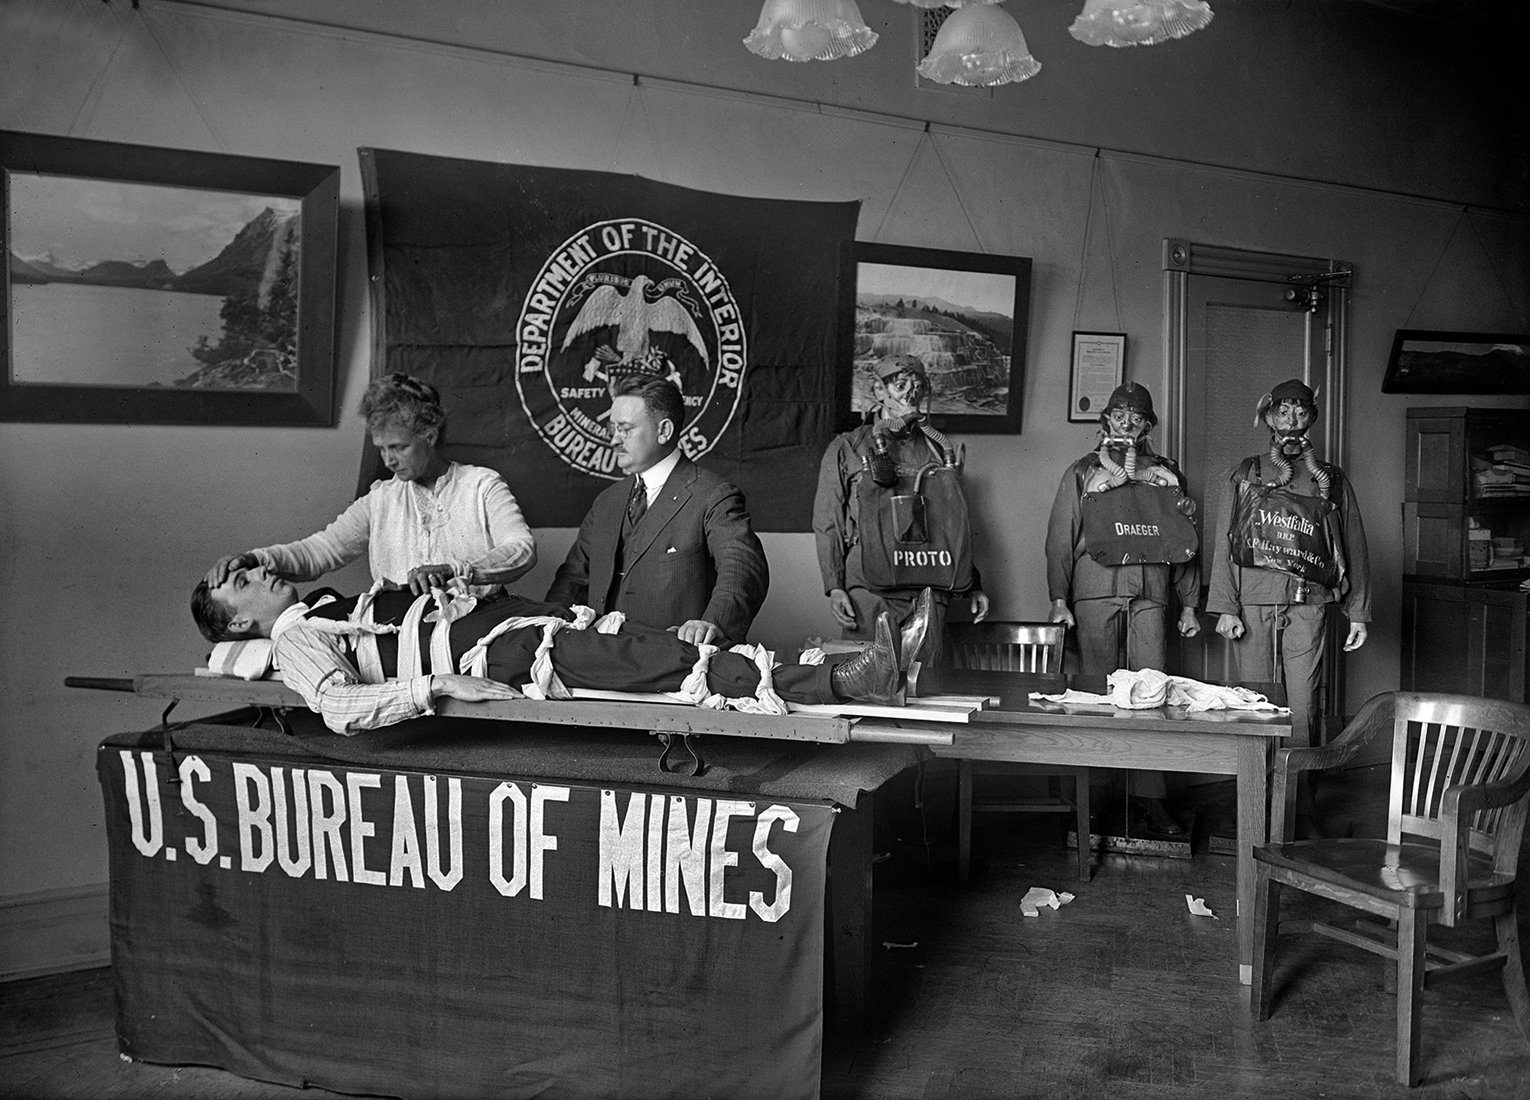 Harris & Ewing - Demostración de aparataje de rescate minero en el U.S. Bureau of Mines, Washington, D.C., USA. Año 1917